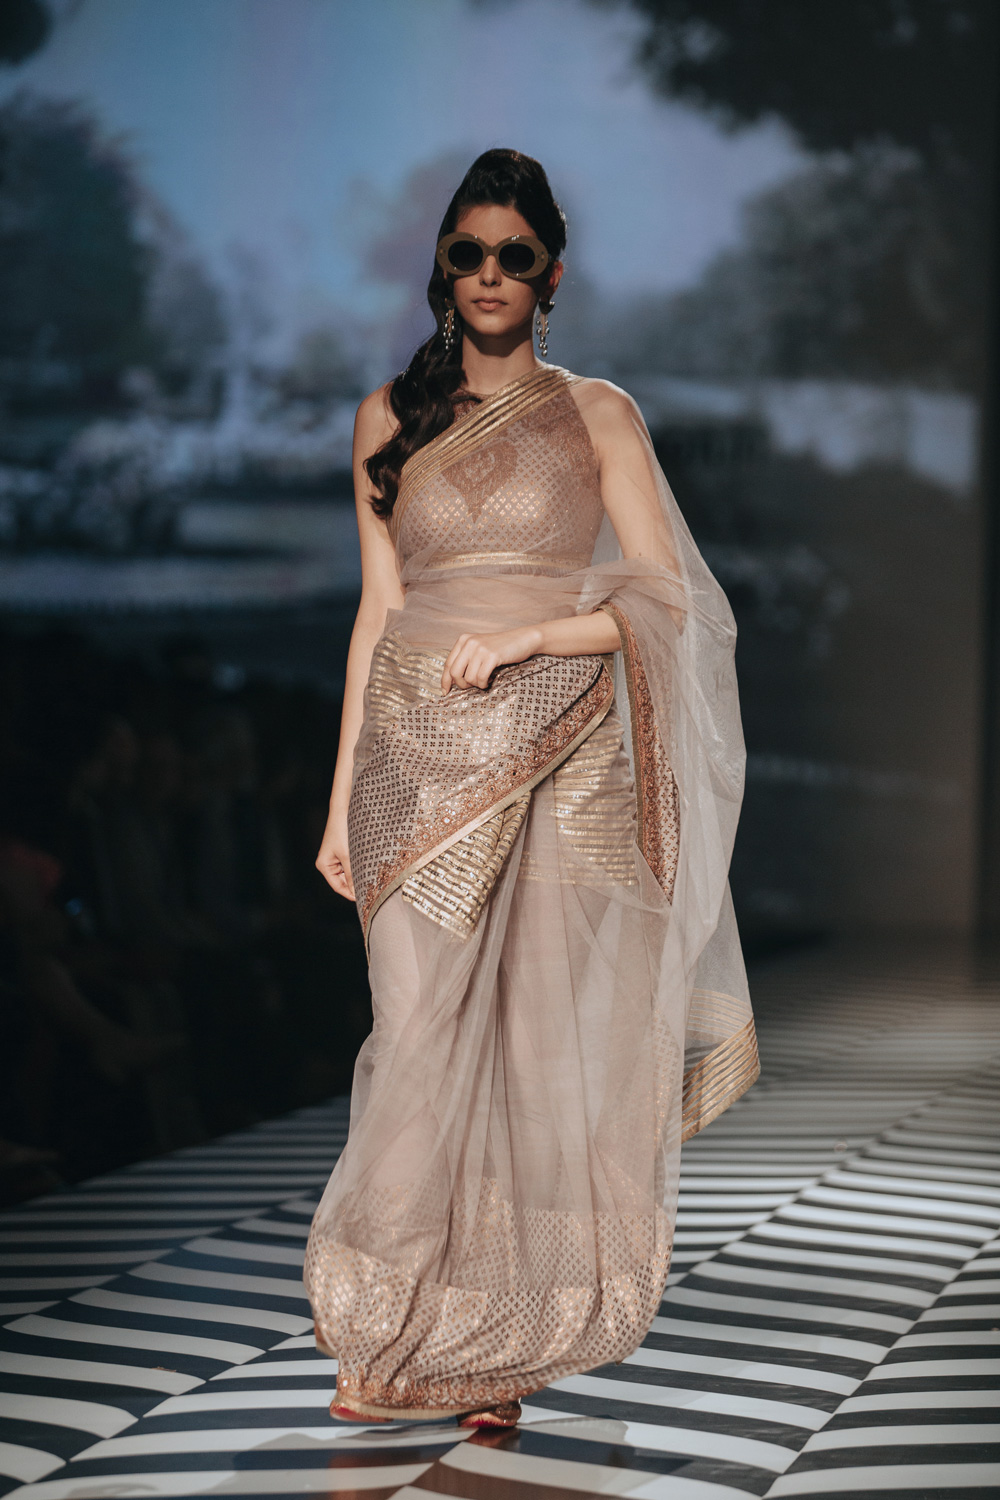 JJ Valaya FDCI Amazon India Fashion Week Spring Summer 2018 Look 28